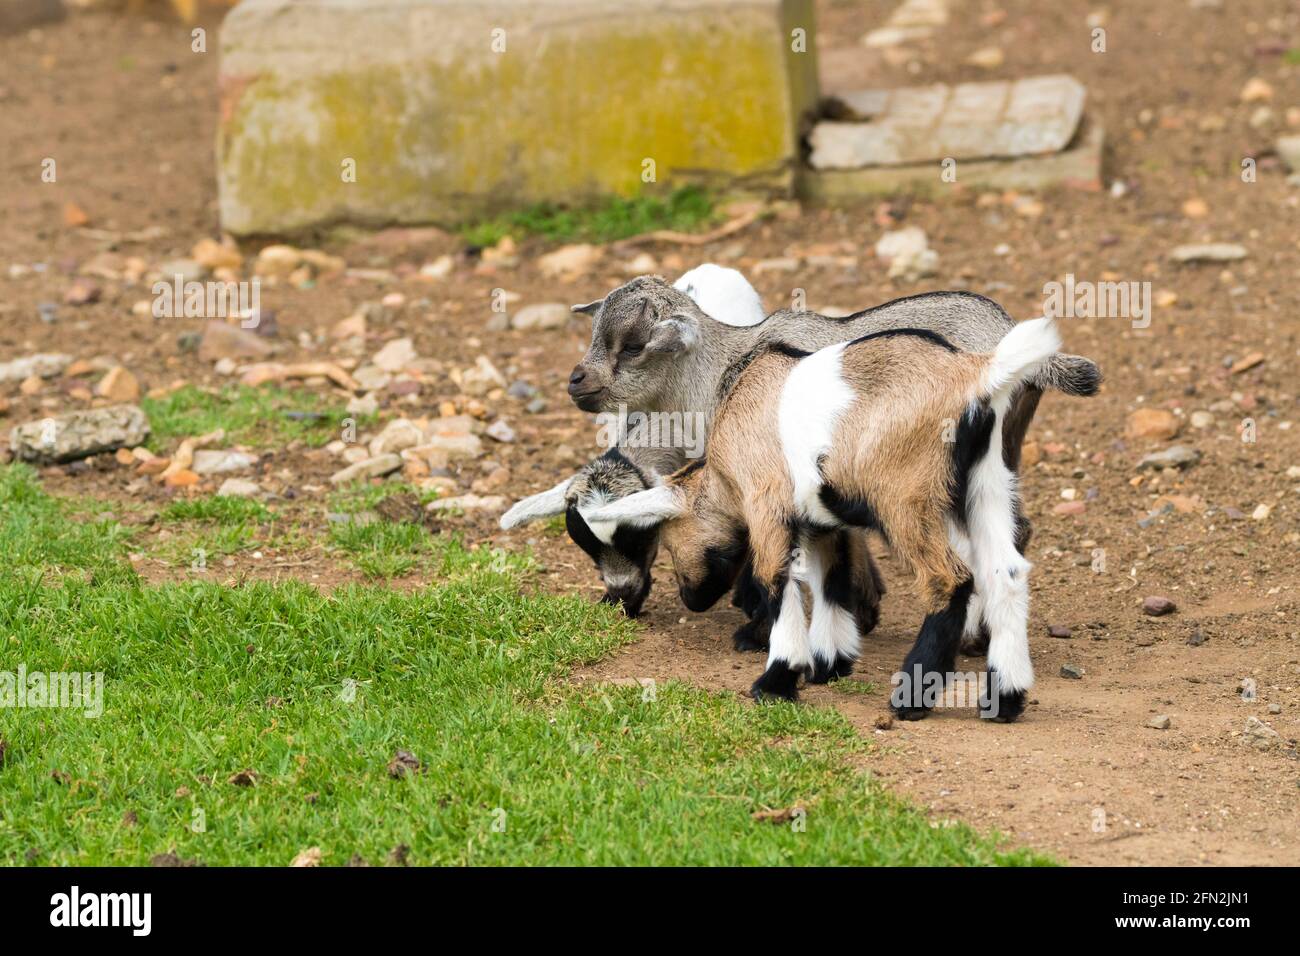 trois bébés chèvres, chèvres d'enfants dans un groupe qui ont l'air adorable concept animal de compagnie zoo pour animaux de ferme Banque D'Images